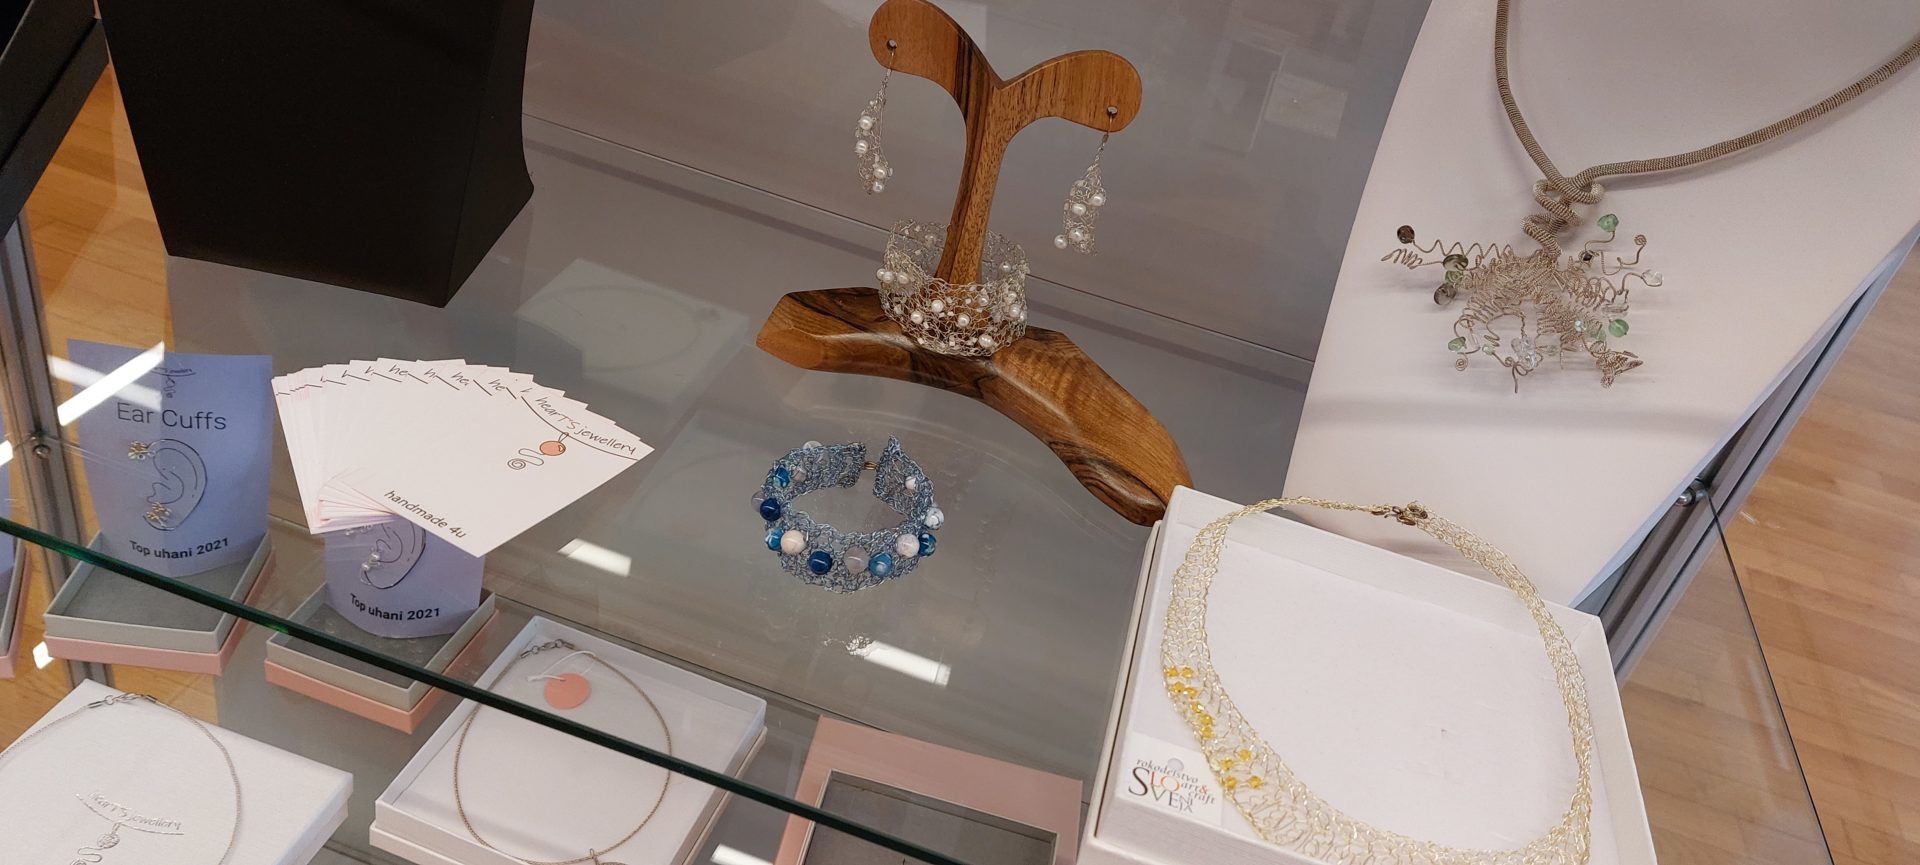 20220423 104330 - Heart's jewellery - razstava kvačkanega nakita iz žice in pletene žice ustvarjalke Tine Sterle